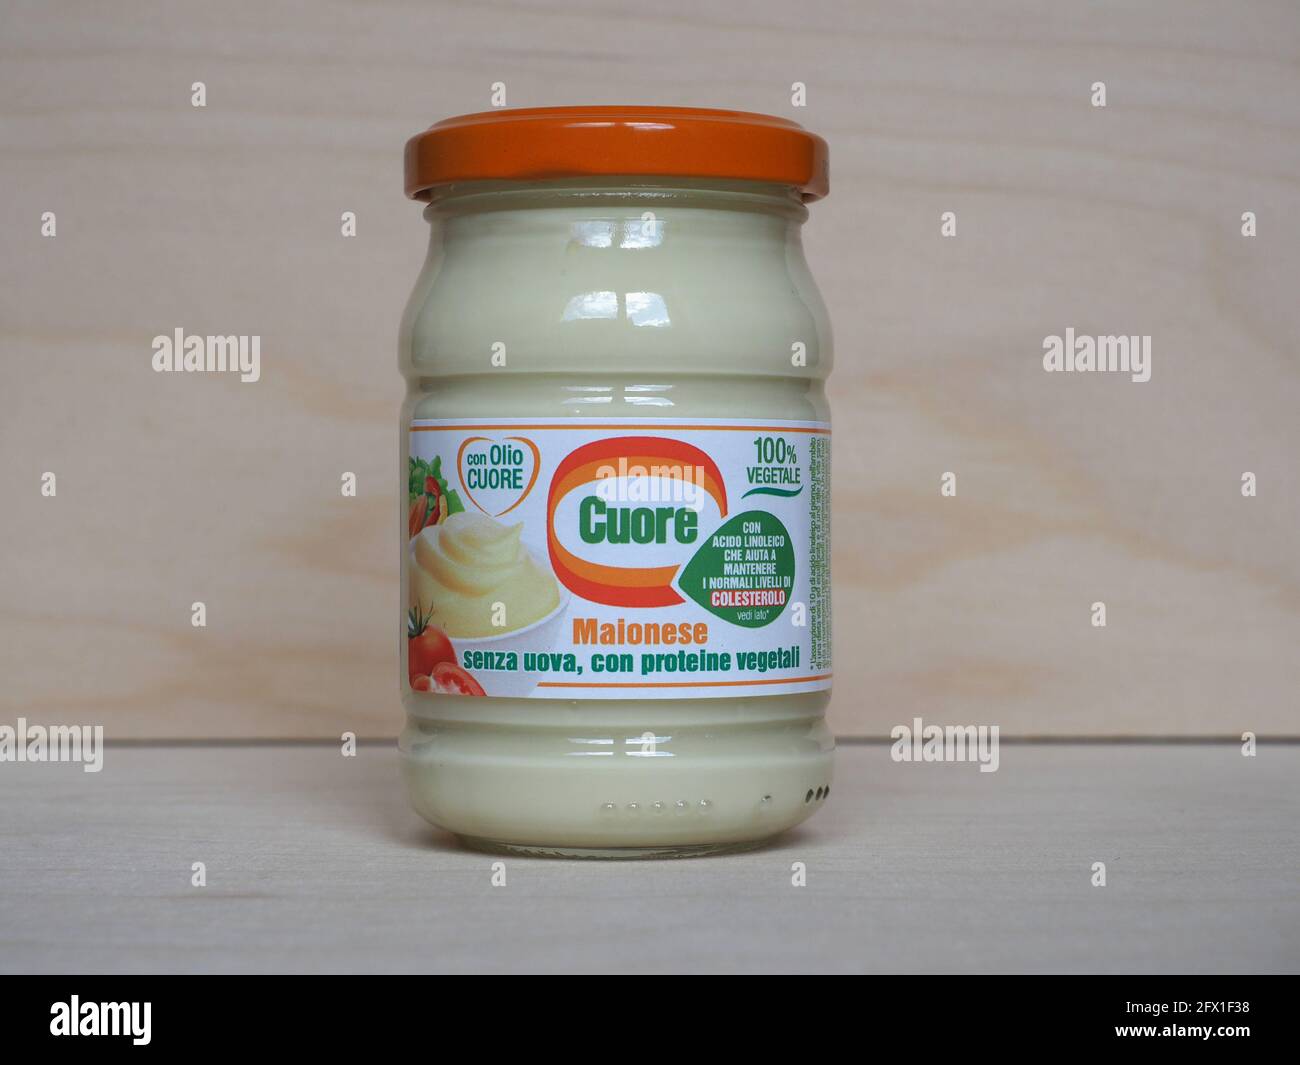 BOLOGNA, ITALY - CIRCA MAY 2021: Jar of Olio Cuore vegan mayonnaise Stock  Photo - Alamy